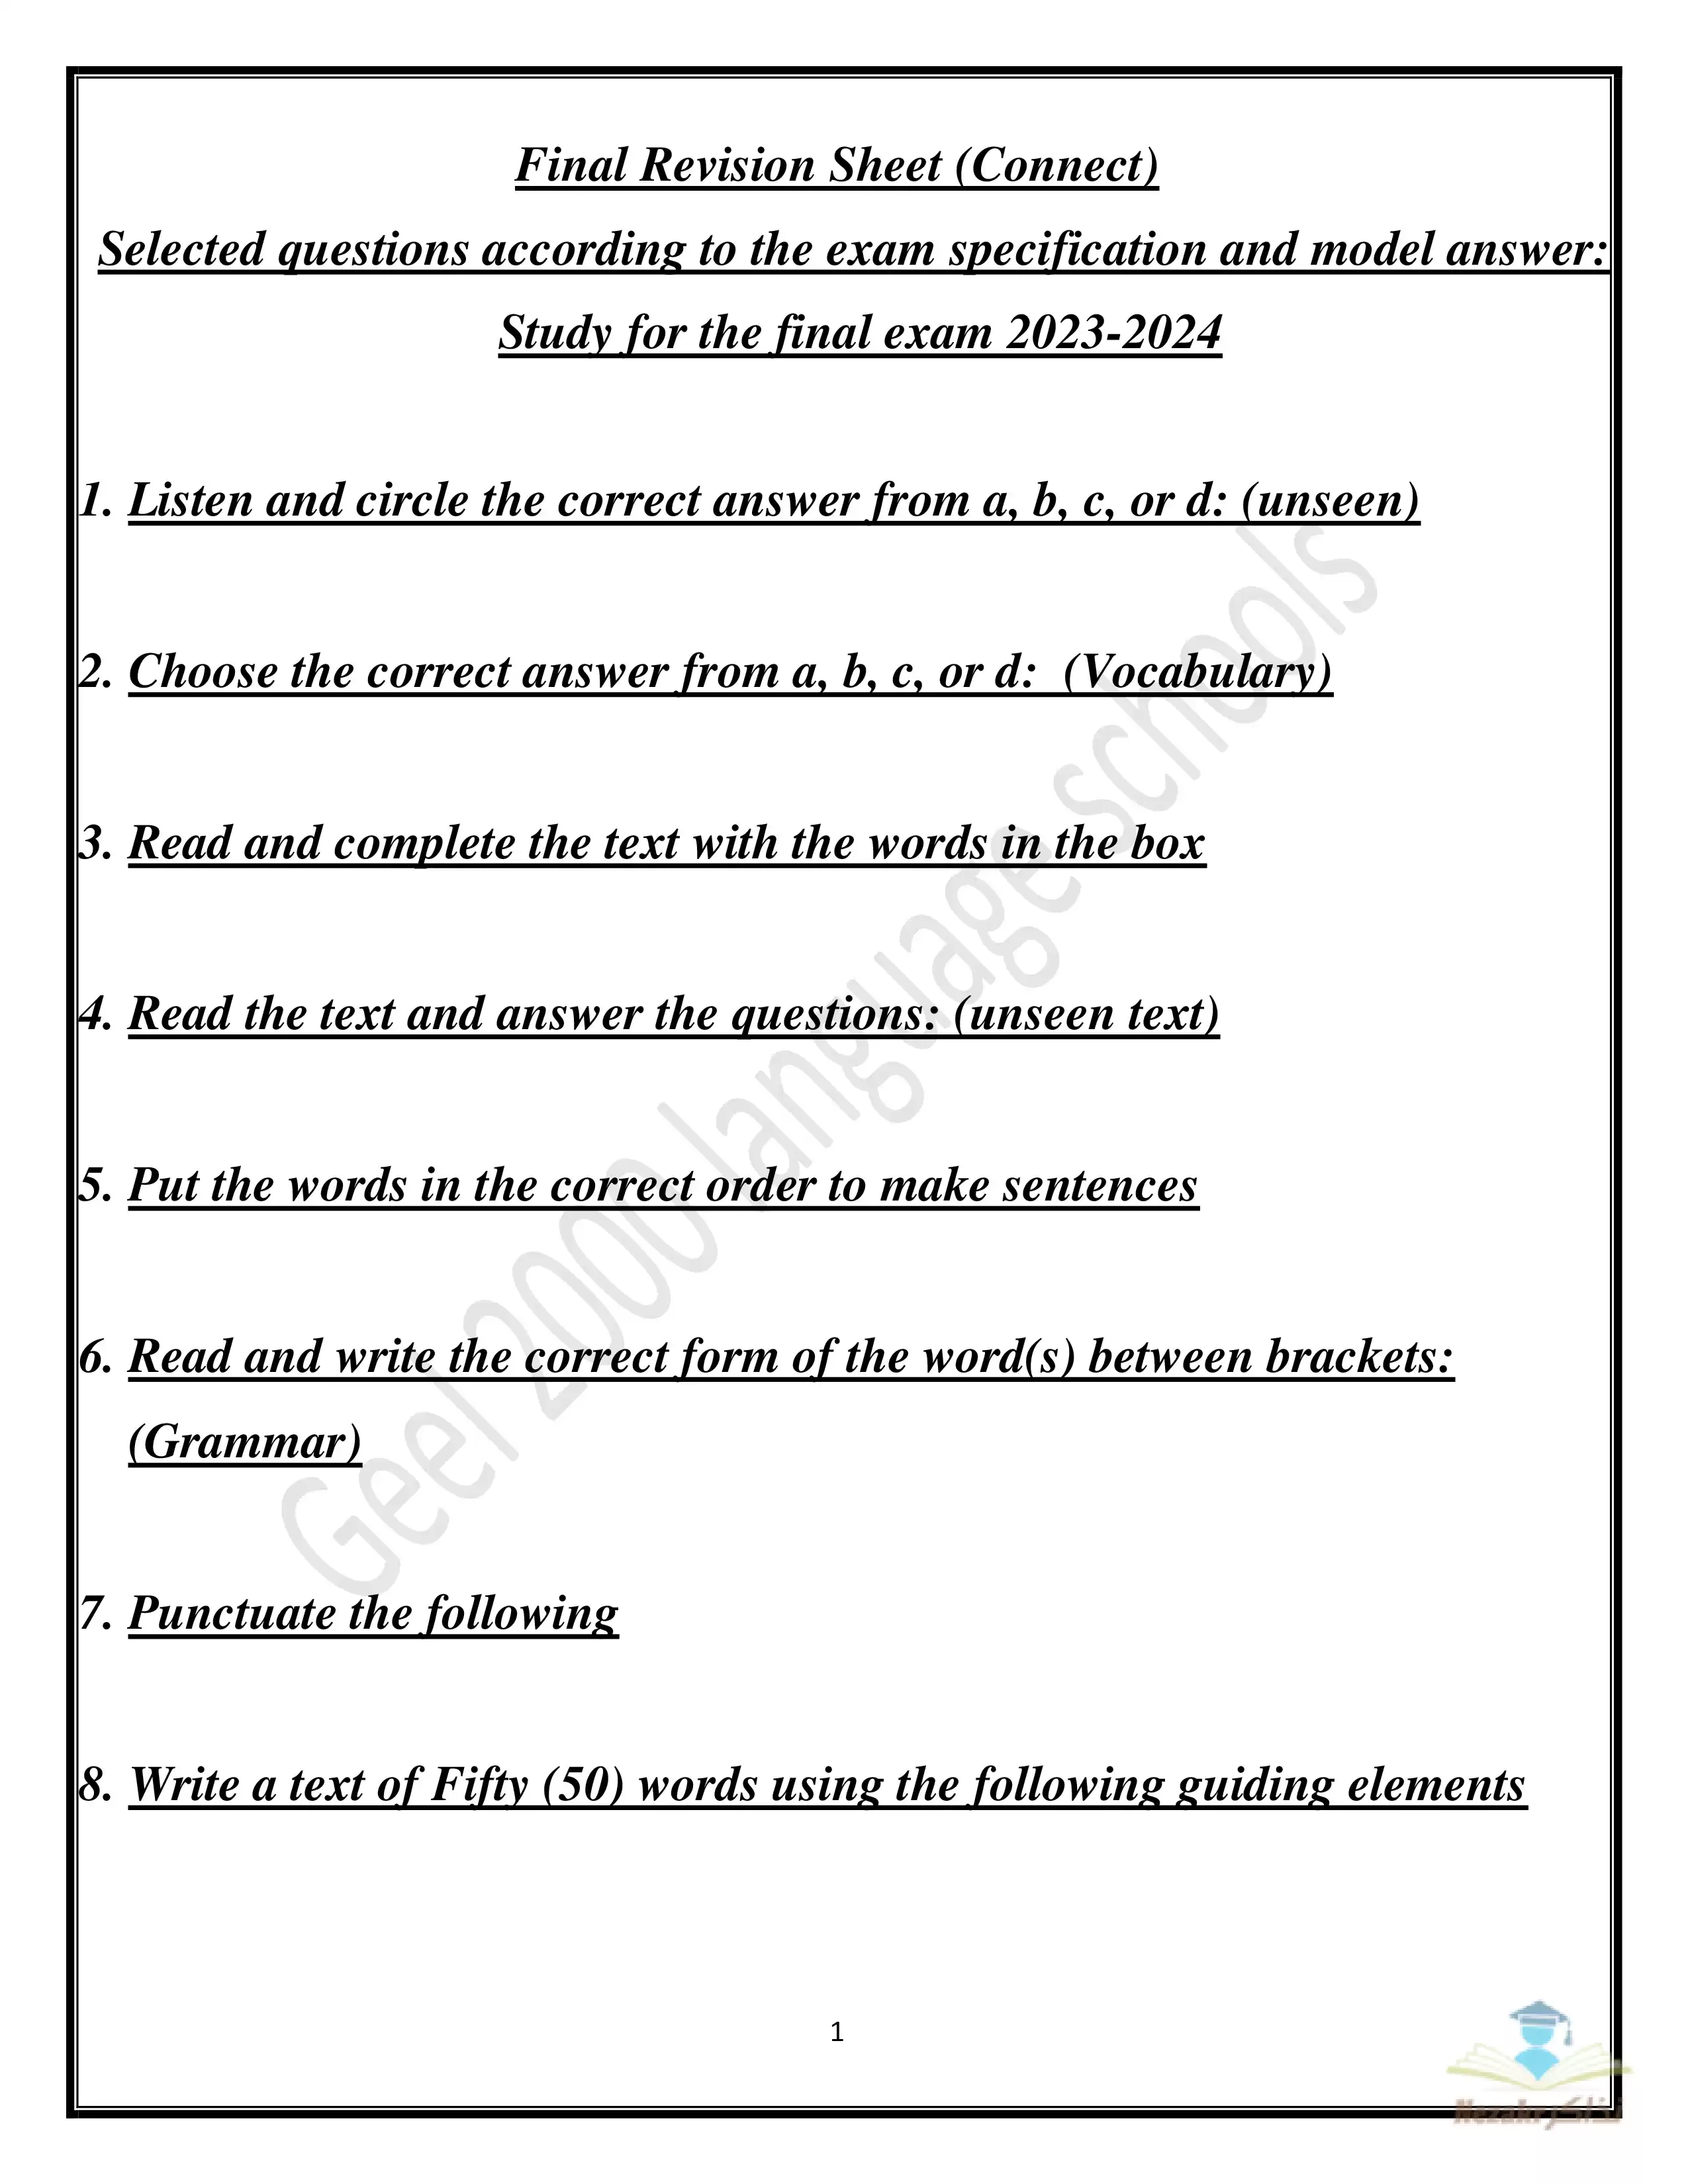 مذكرة مراجعة نهائية في اللغة الانجليزية Connect6 للصف السادس الابتدائي الفصل الدراسي الثاني